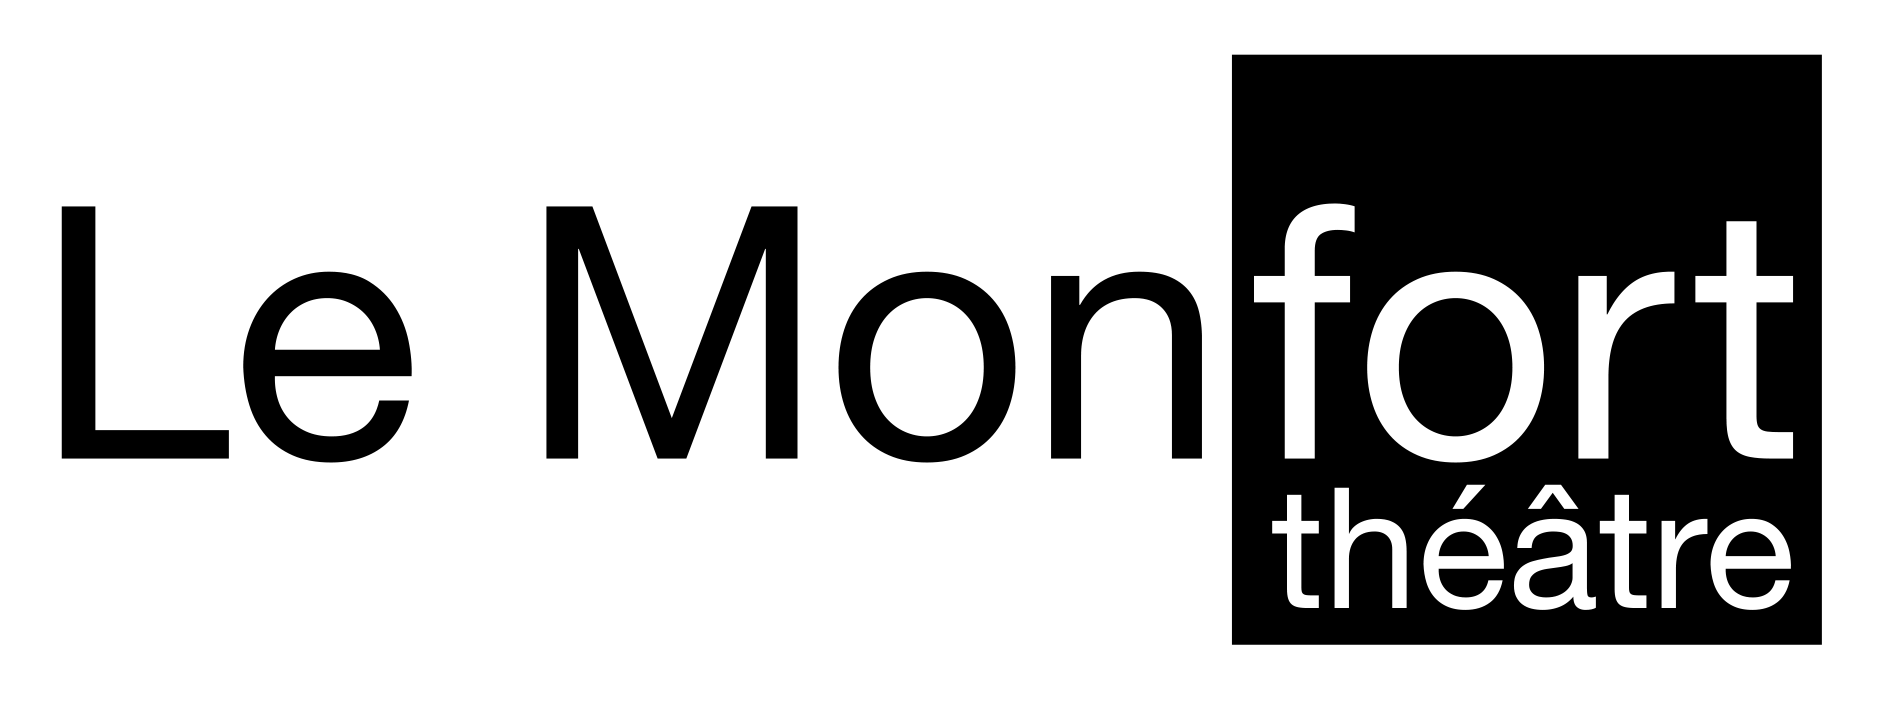 Le Montfort